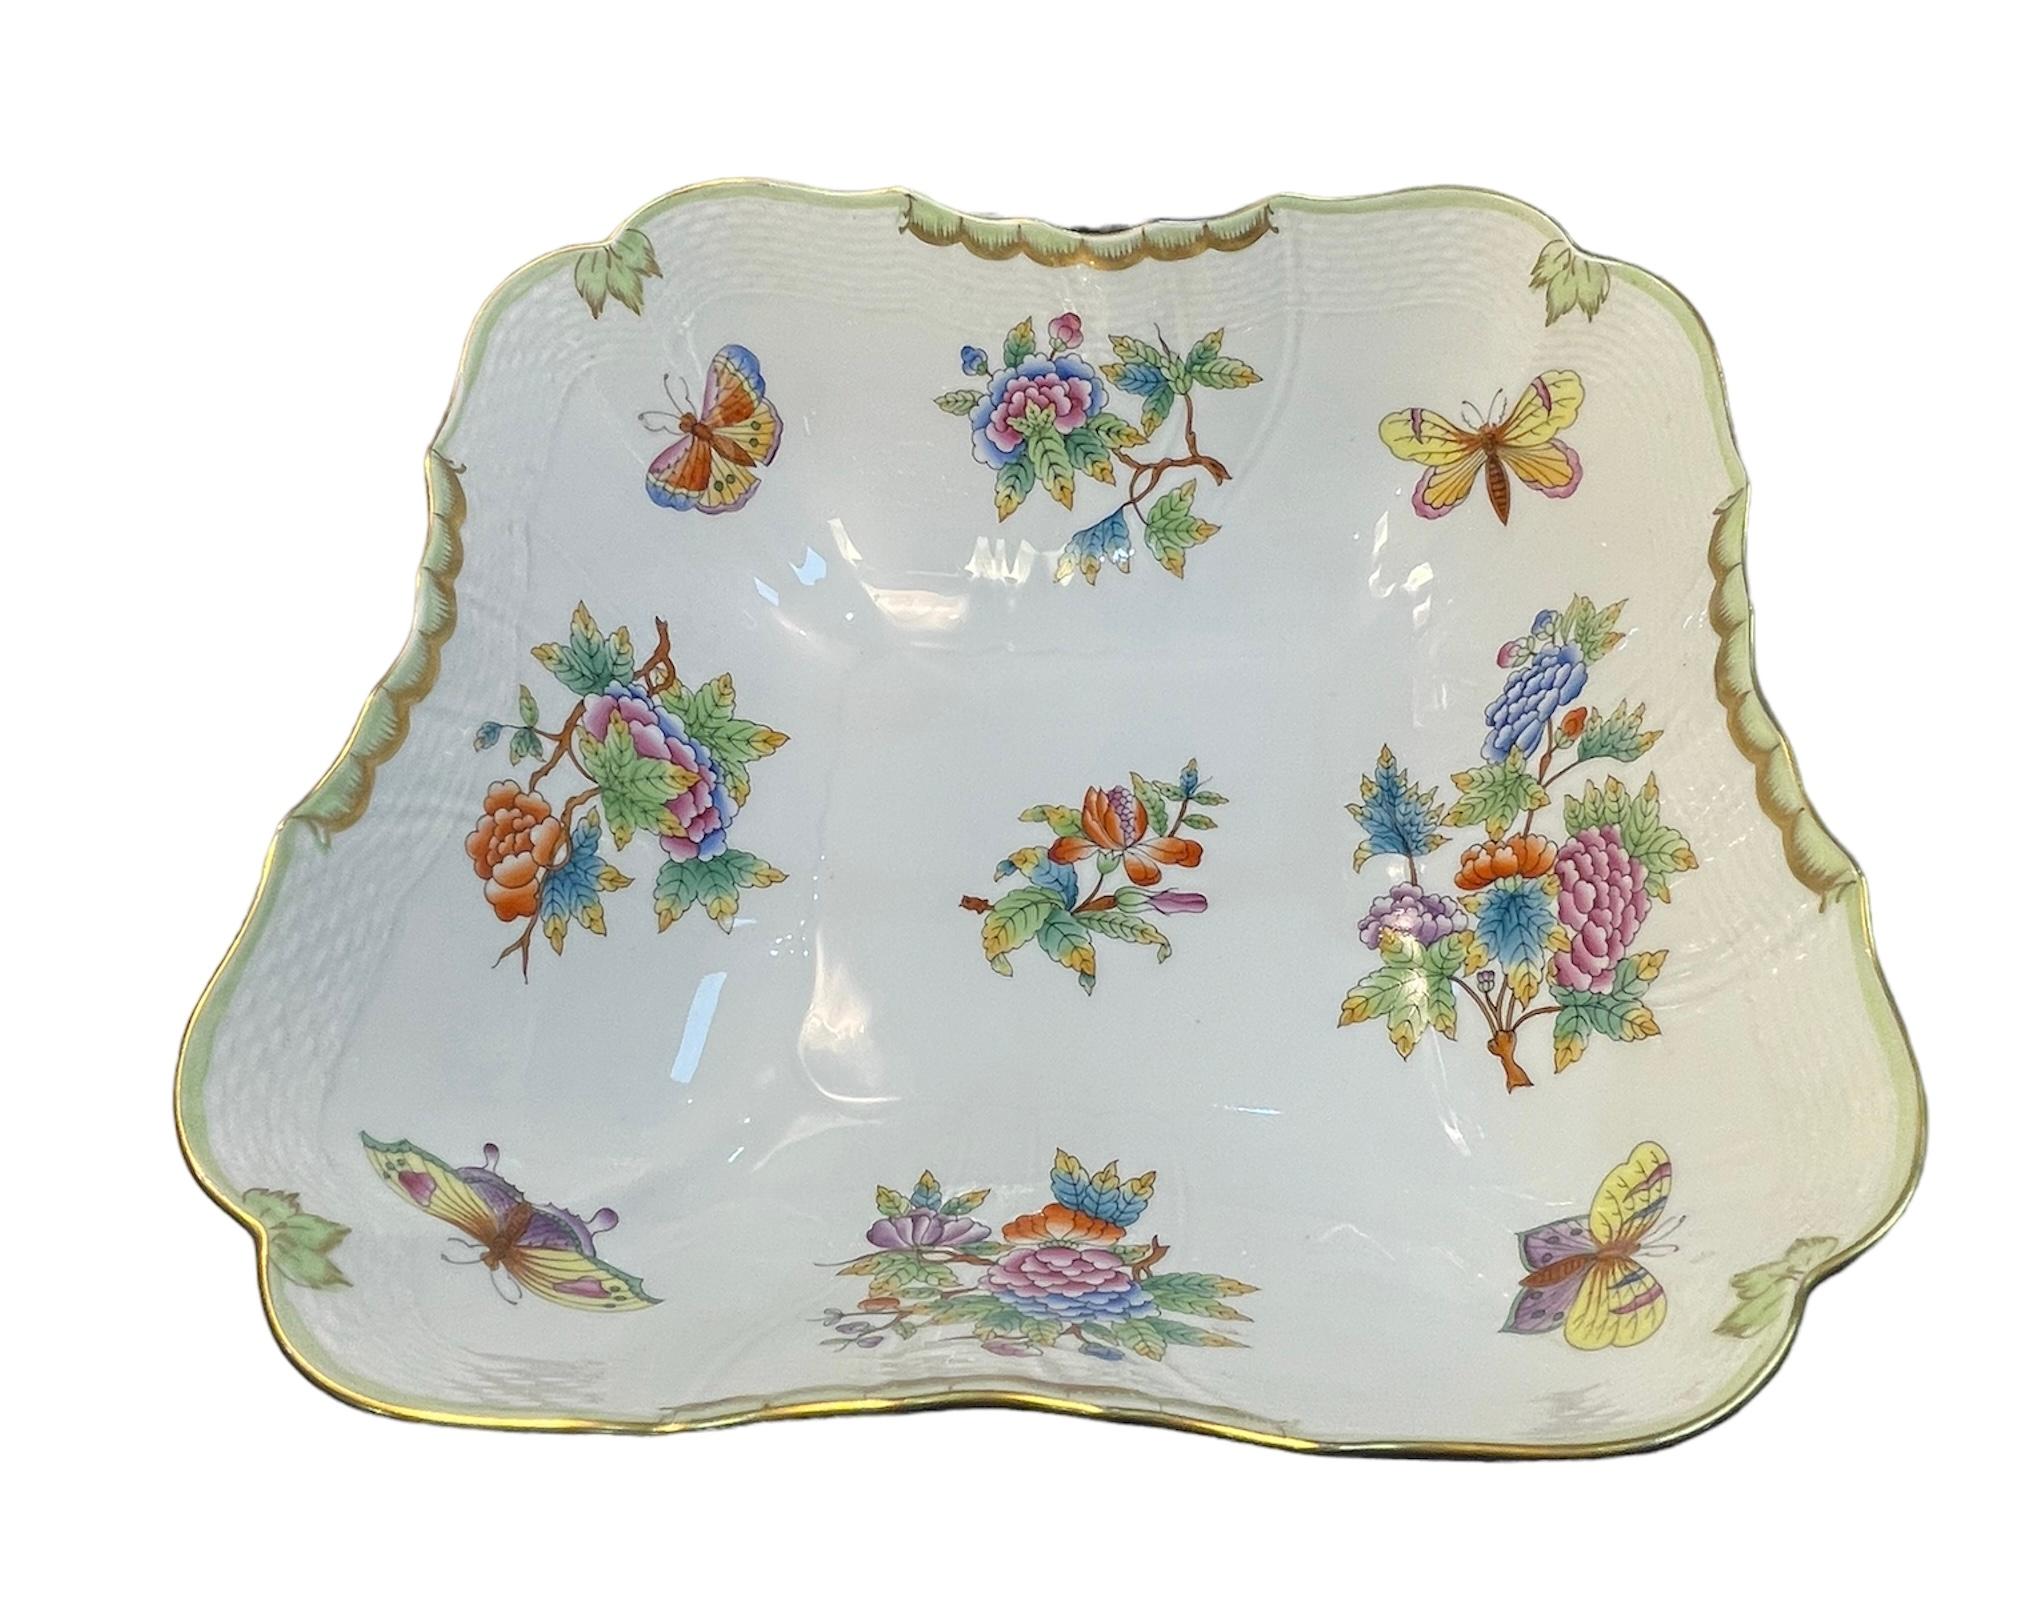 Dies ist eine Herend Porzellan Queen Victoria Pattern Salatschüssel. Es zeigt eine quadratische Schale, die mit kleinen bunten Blumensträußen und Schmetterlingen verziert ist. Der gewellte Rand ist handbemalt in mintgrüner Farbe. Es wird durch einen